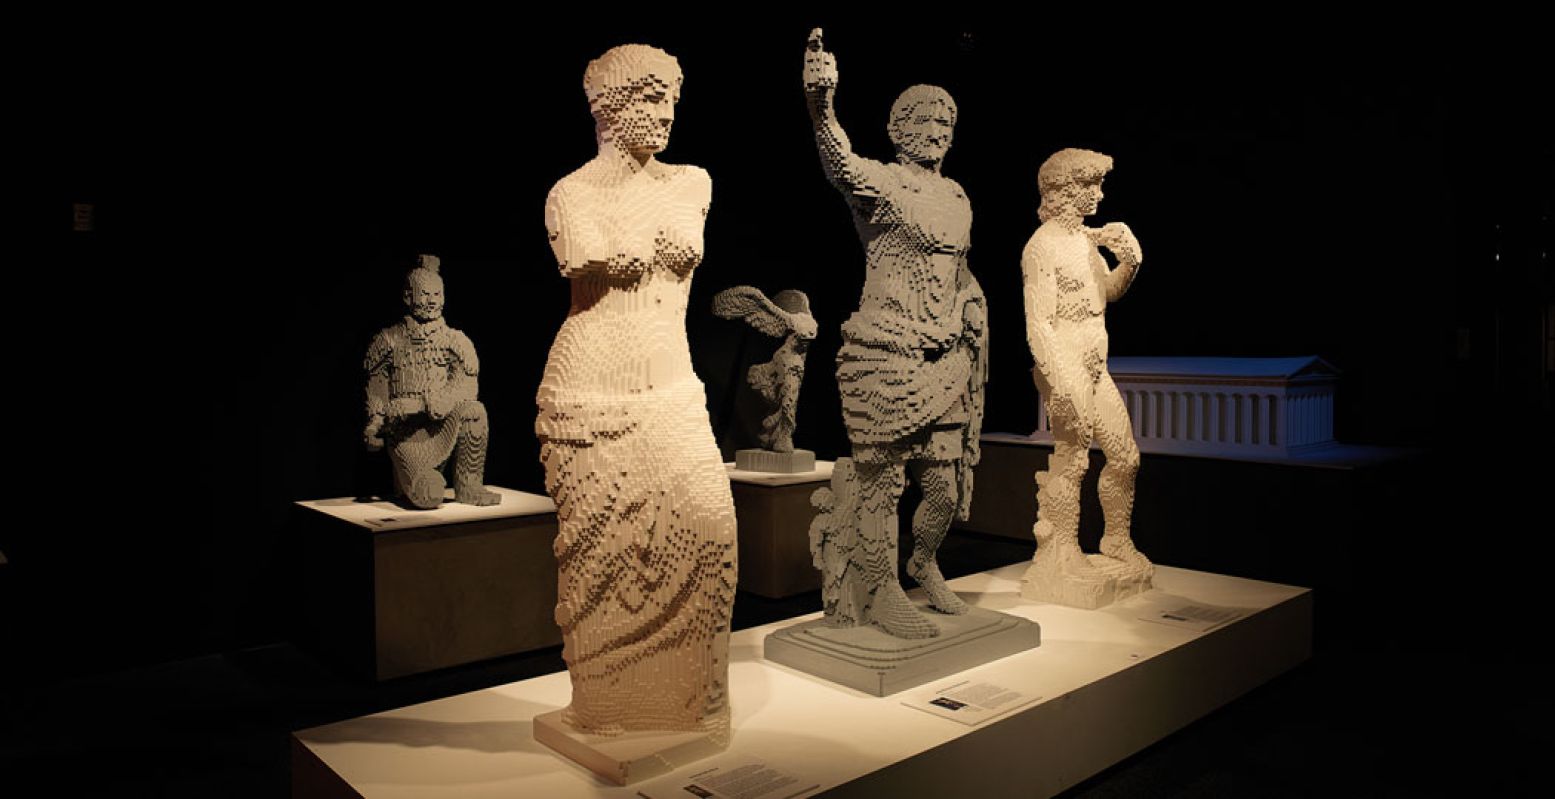 Van links naar rechts: Venus de Milo (18.483 steentjes), Augustus (22.300 steentjes) en David (16.349 steentjes). Foto: The Art of the Brick.